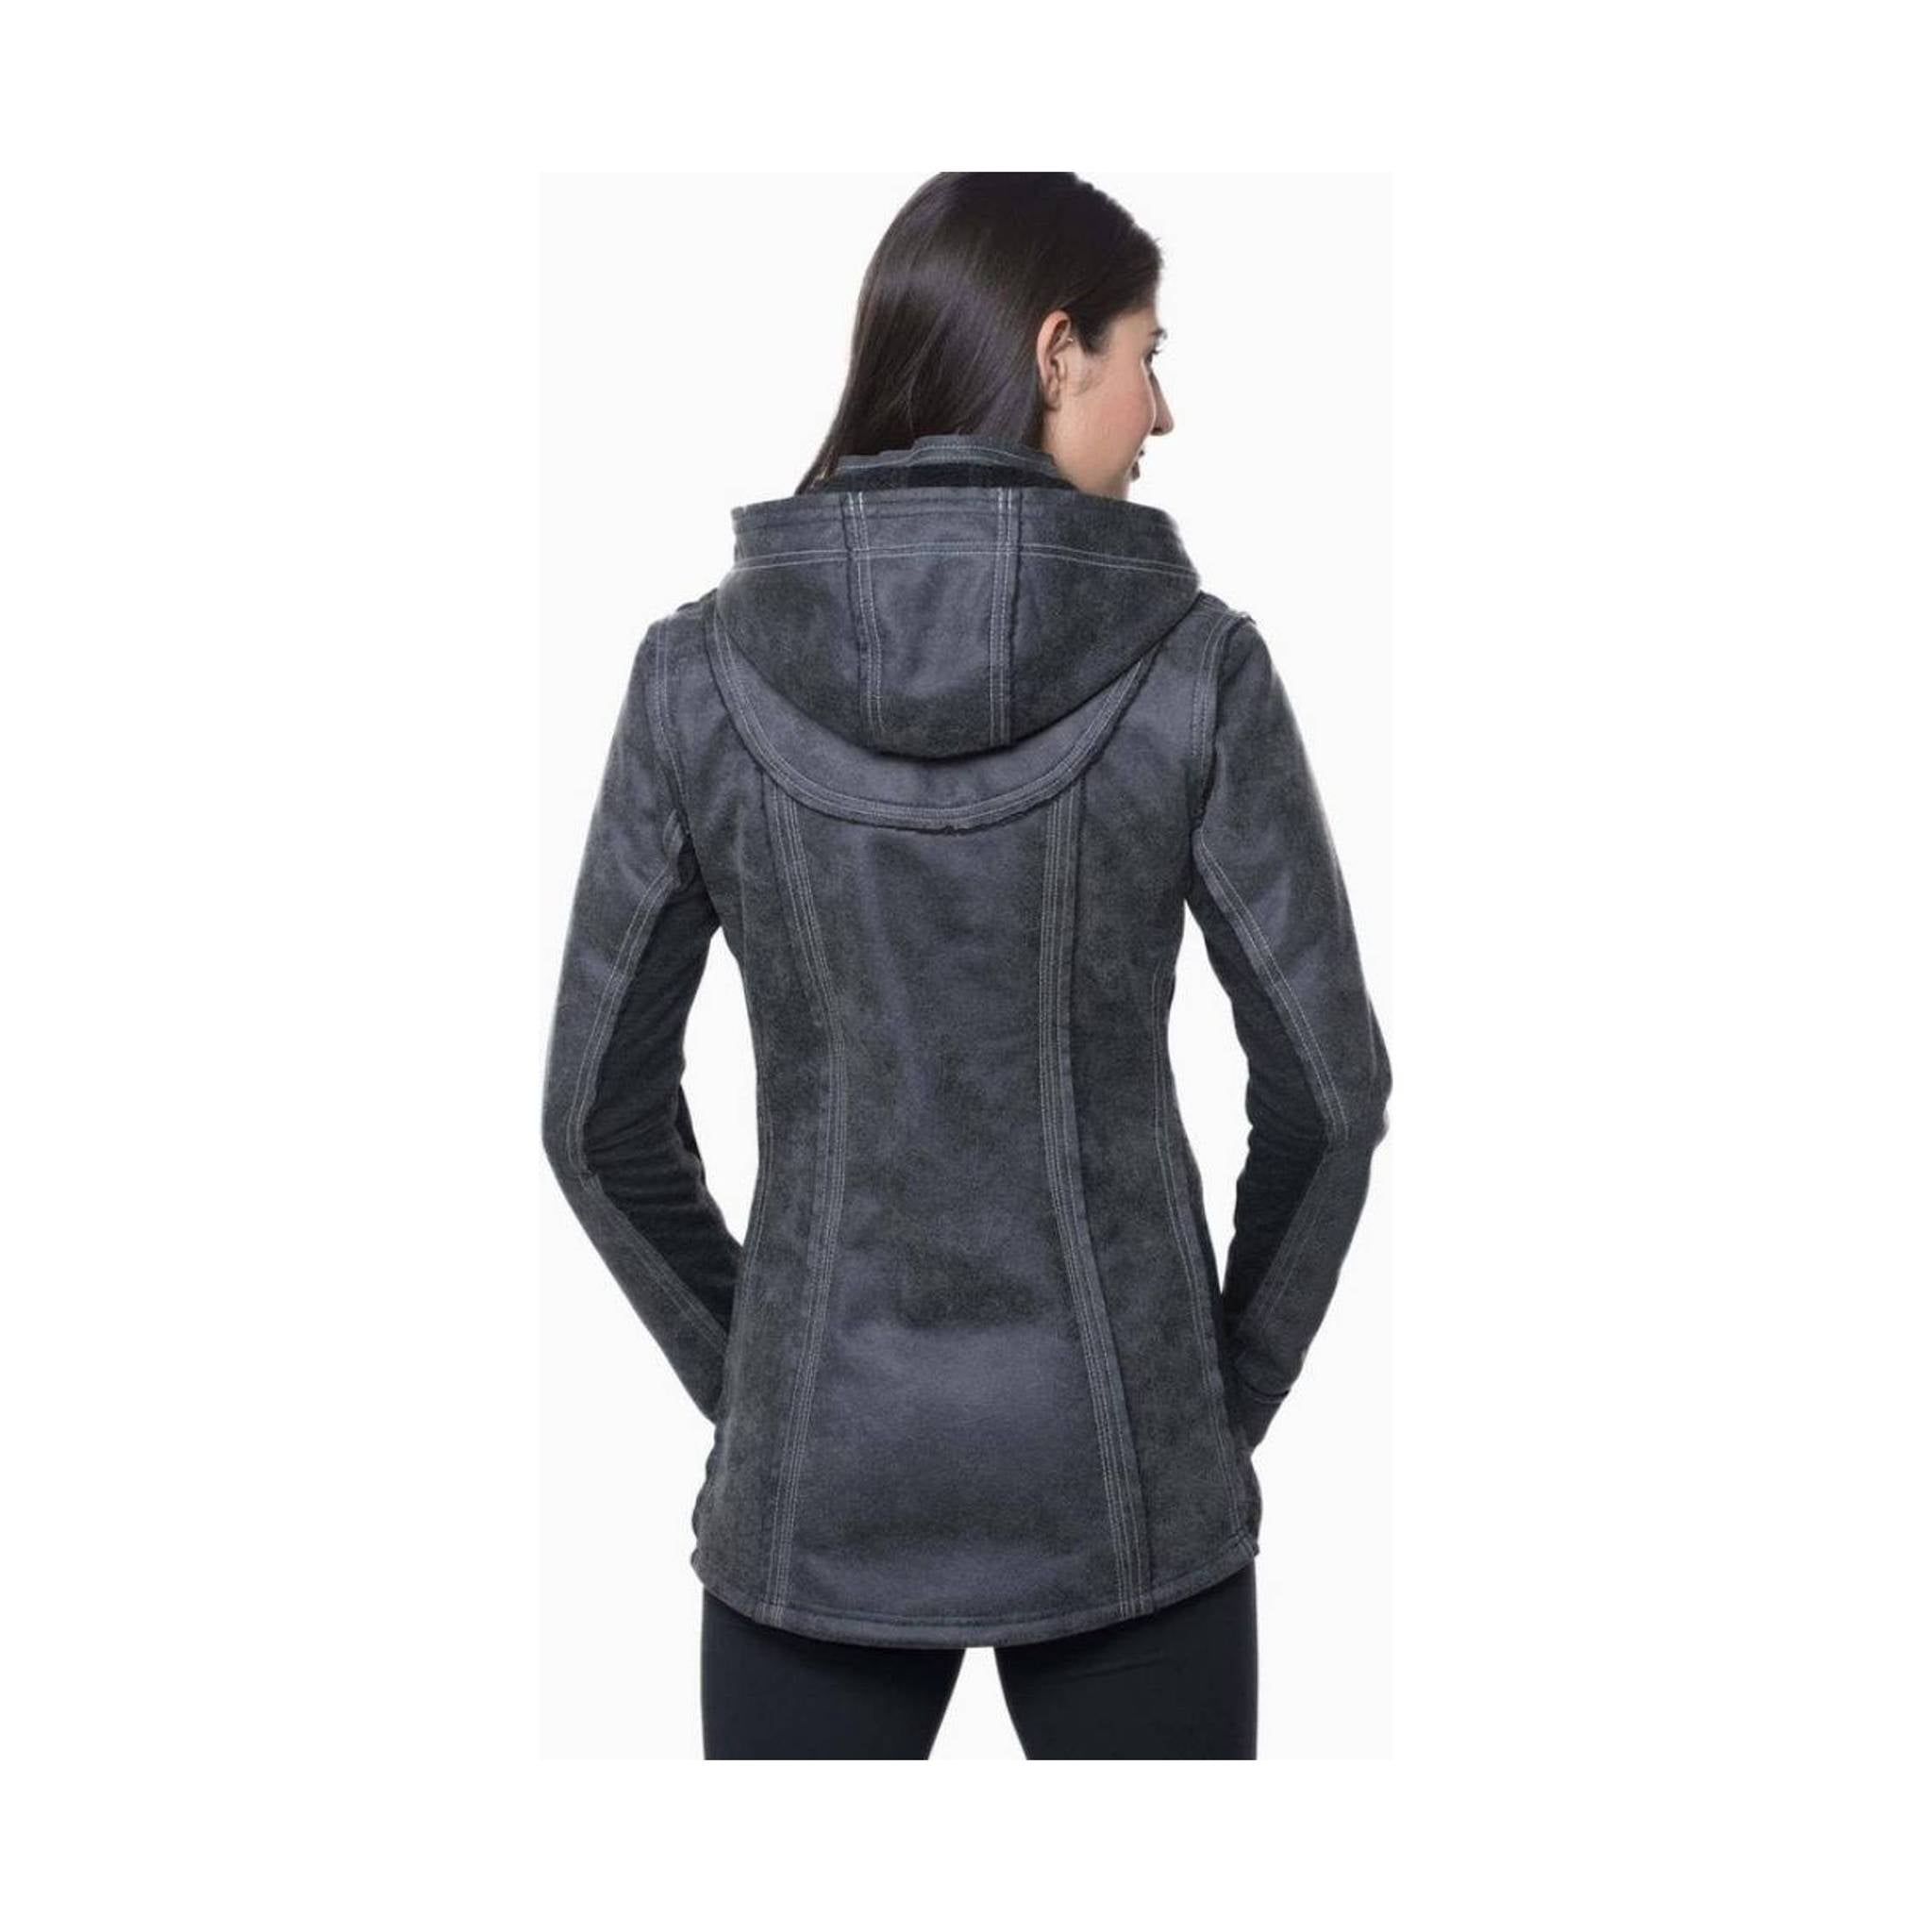 Kuhl Jacket Womens Small Full Zip Vintage Pantina Dye Black Hoodie Casual  Adult